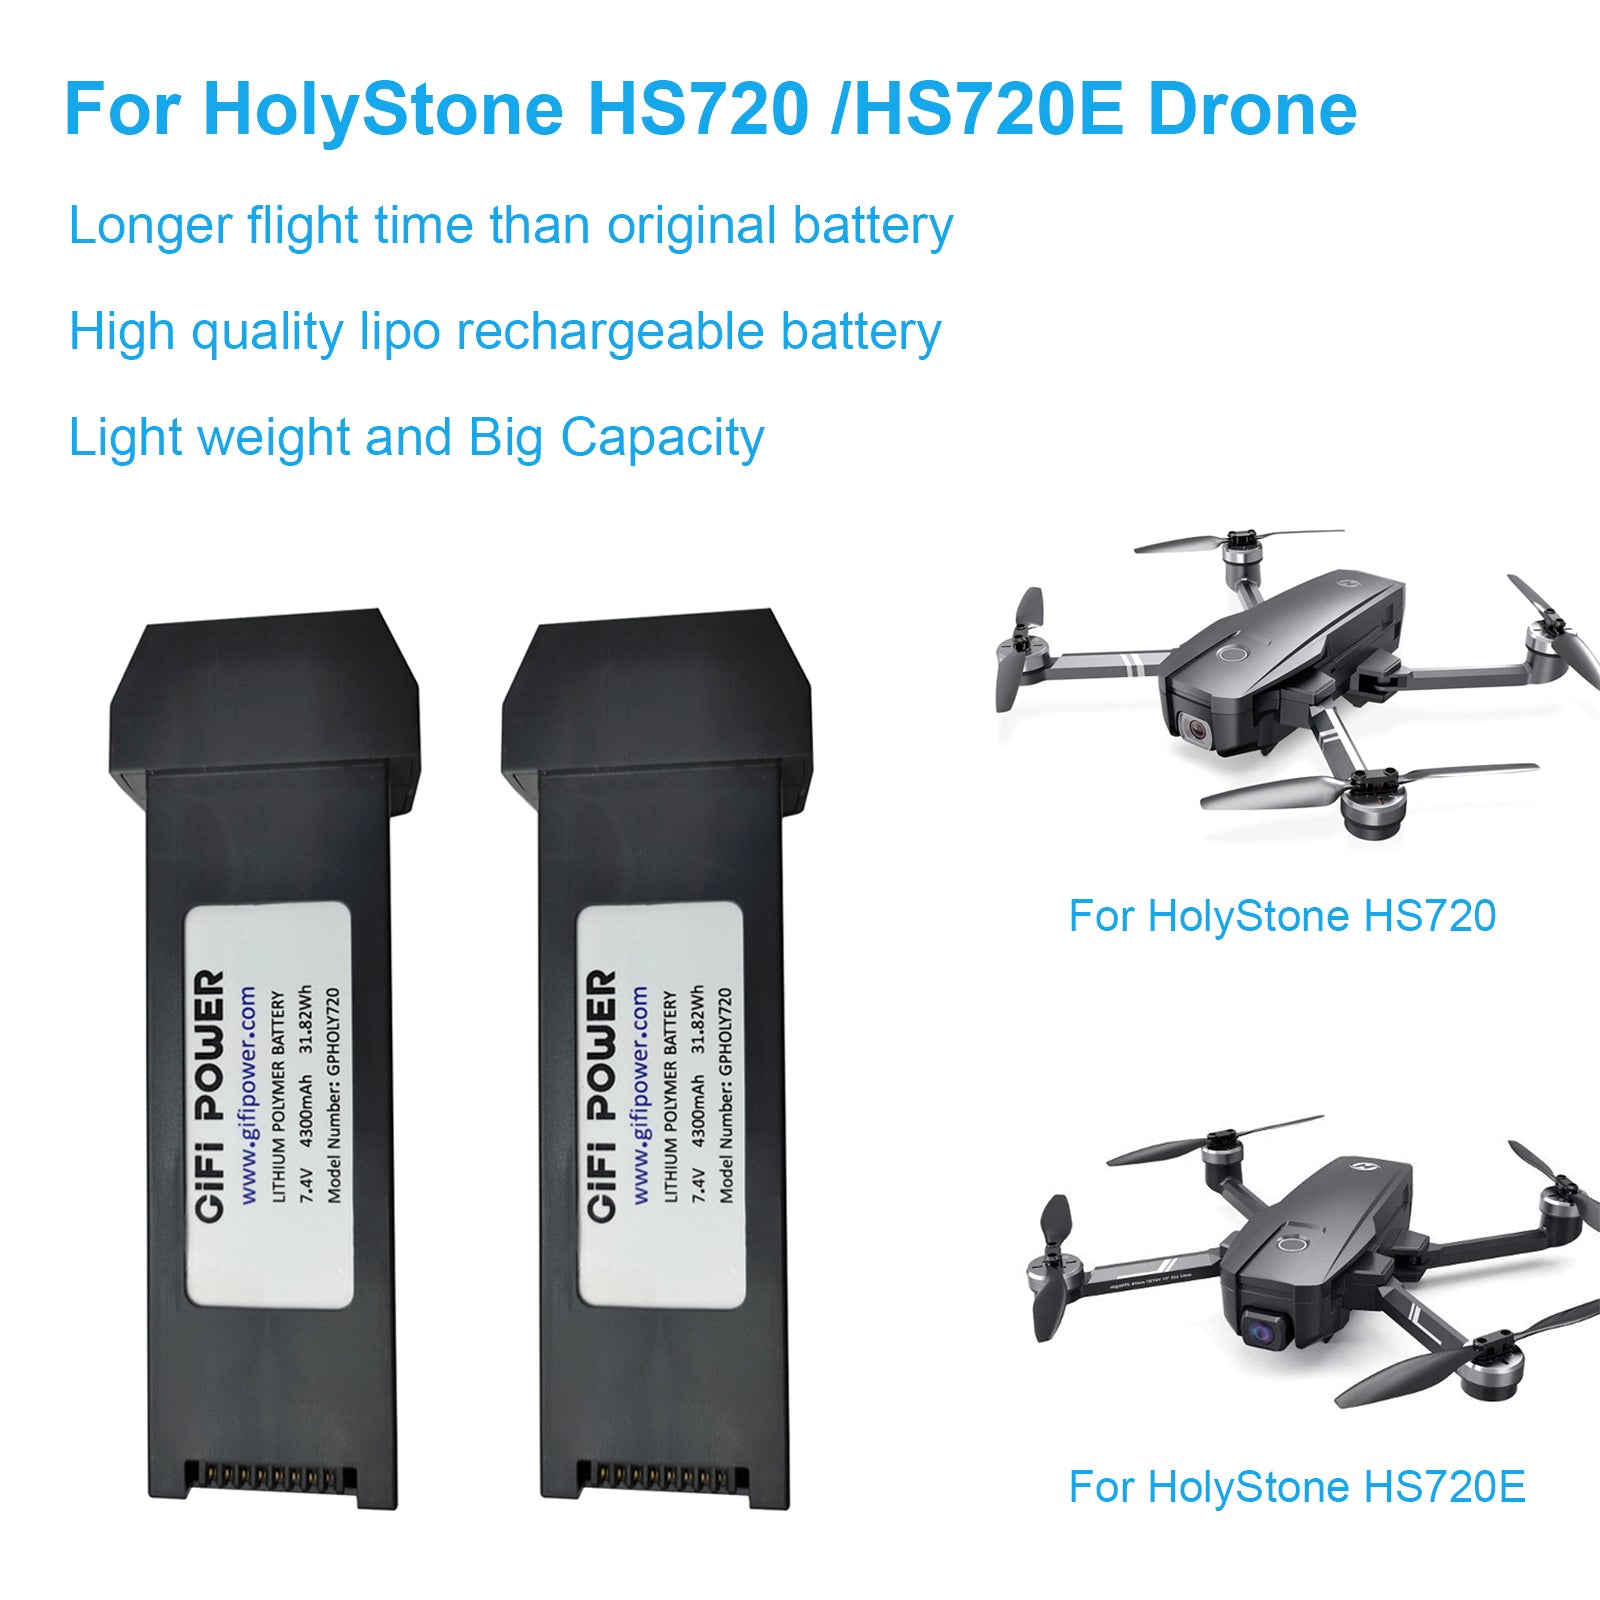 7.4V 4300mAh Lithium Spare Battery for HolyStone HS720 & HS720E GPS Quadcopter Drone